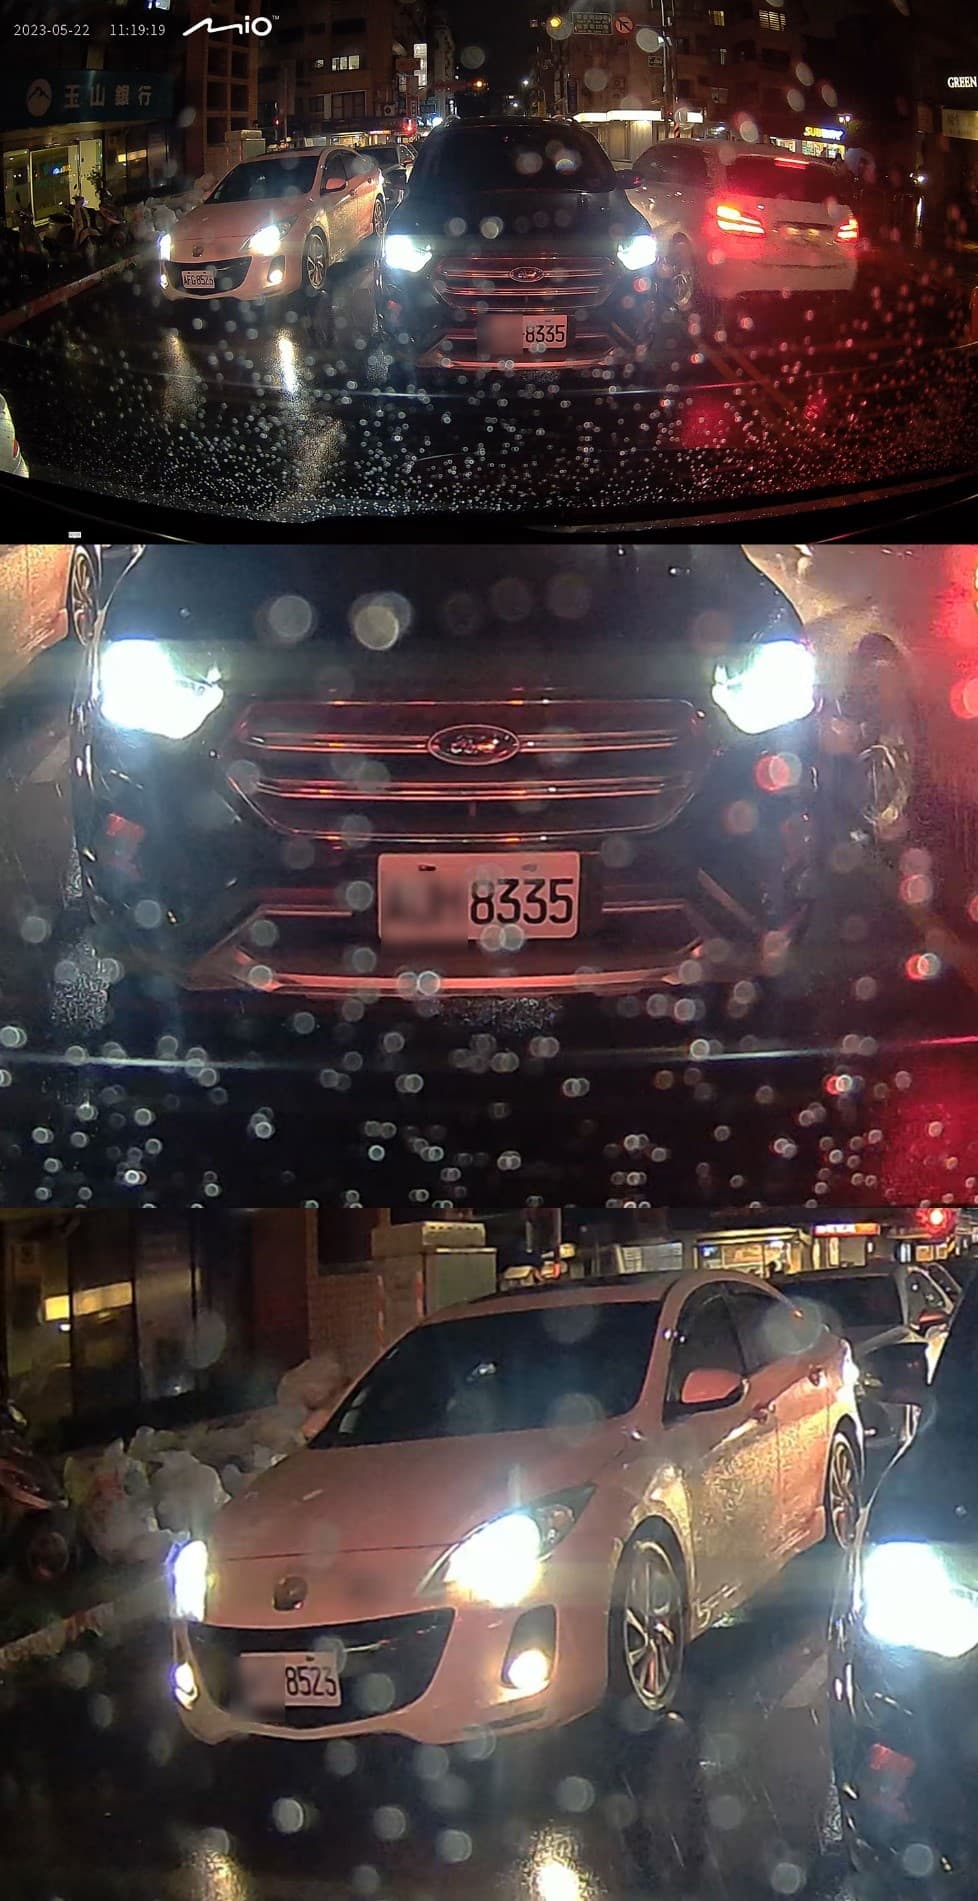 E60 後鏡於夜間雨天環境的實拍畫面，圖上為原始畫面，圖及圖下為放大後的影像，能看到後方與左側的車牌都很清晰。